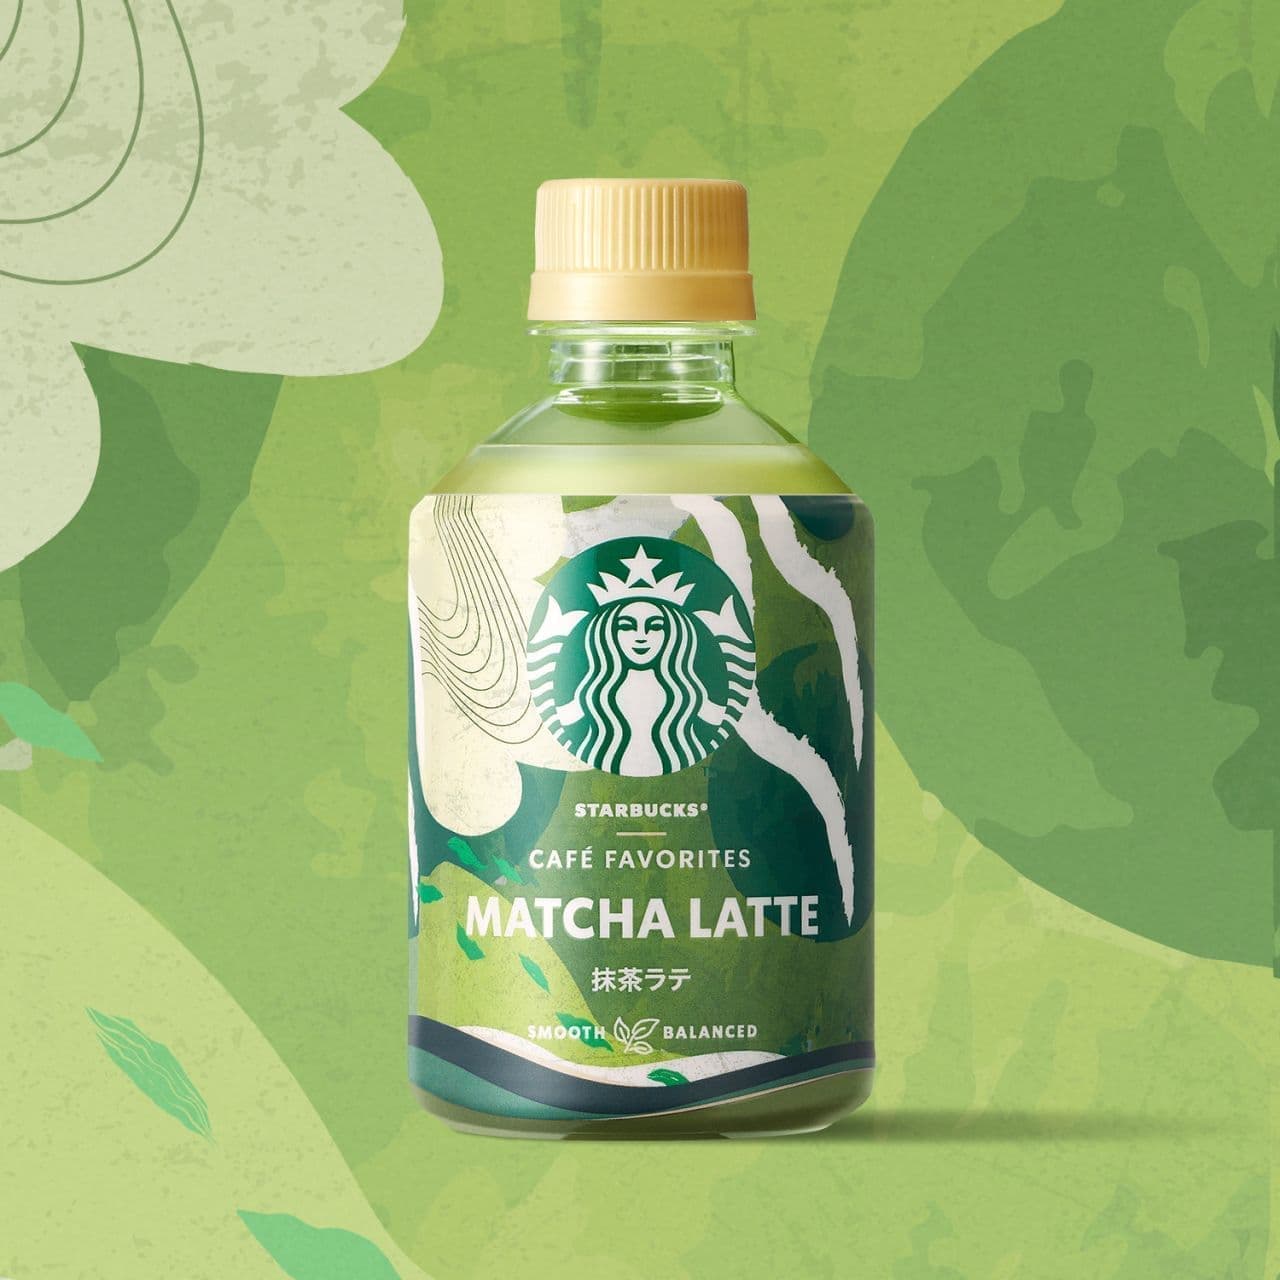 Starbucks CAFE FAVORITES Green Tea Latte" limited to 7-ELEVEN & i Group